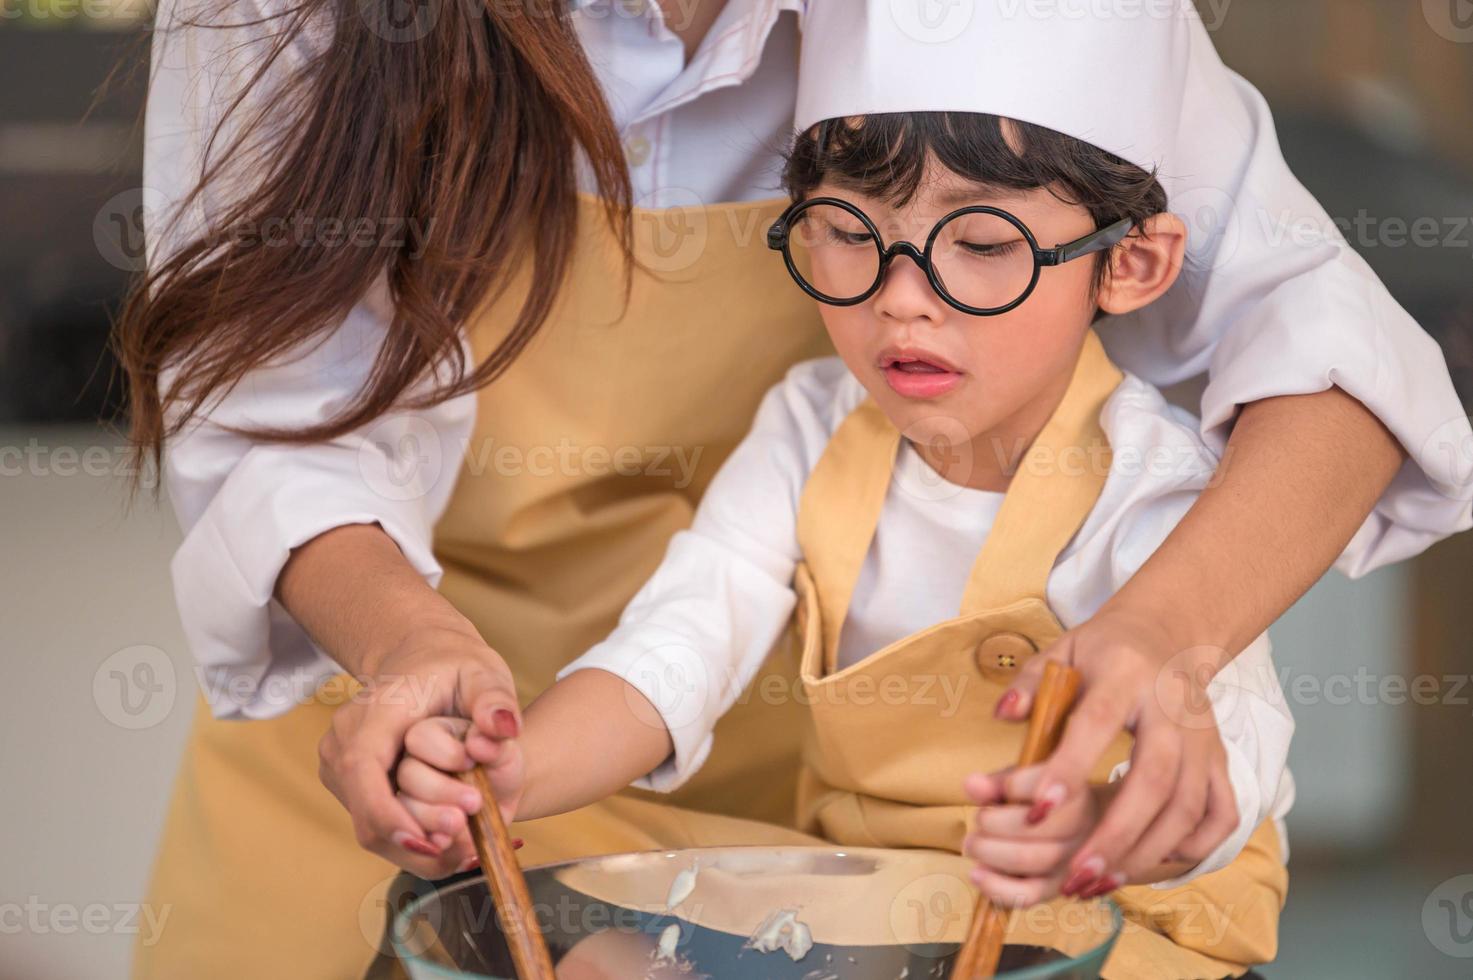 heureux petit garçon mignon avec des lunettes et belle mère asiatique se préparent à cuisiner dans la cuisine à la maison. les modes de vie et la famille des gens. concept de nourriture et d'ingrédients faits maison. la vie de deux thaïlandais photo